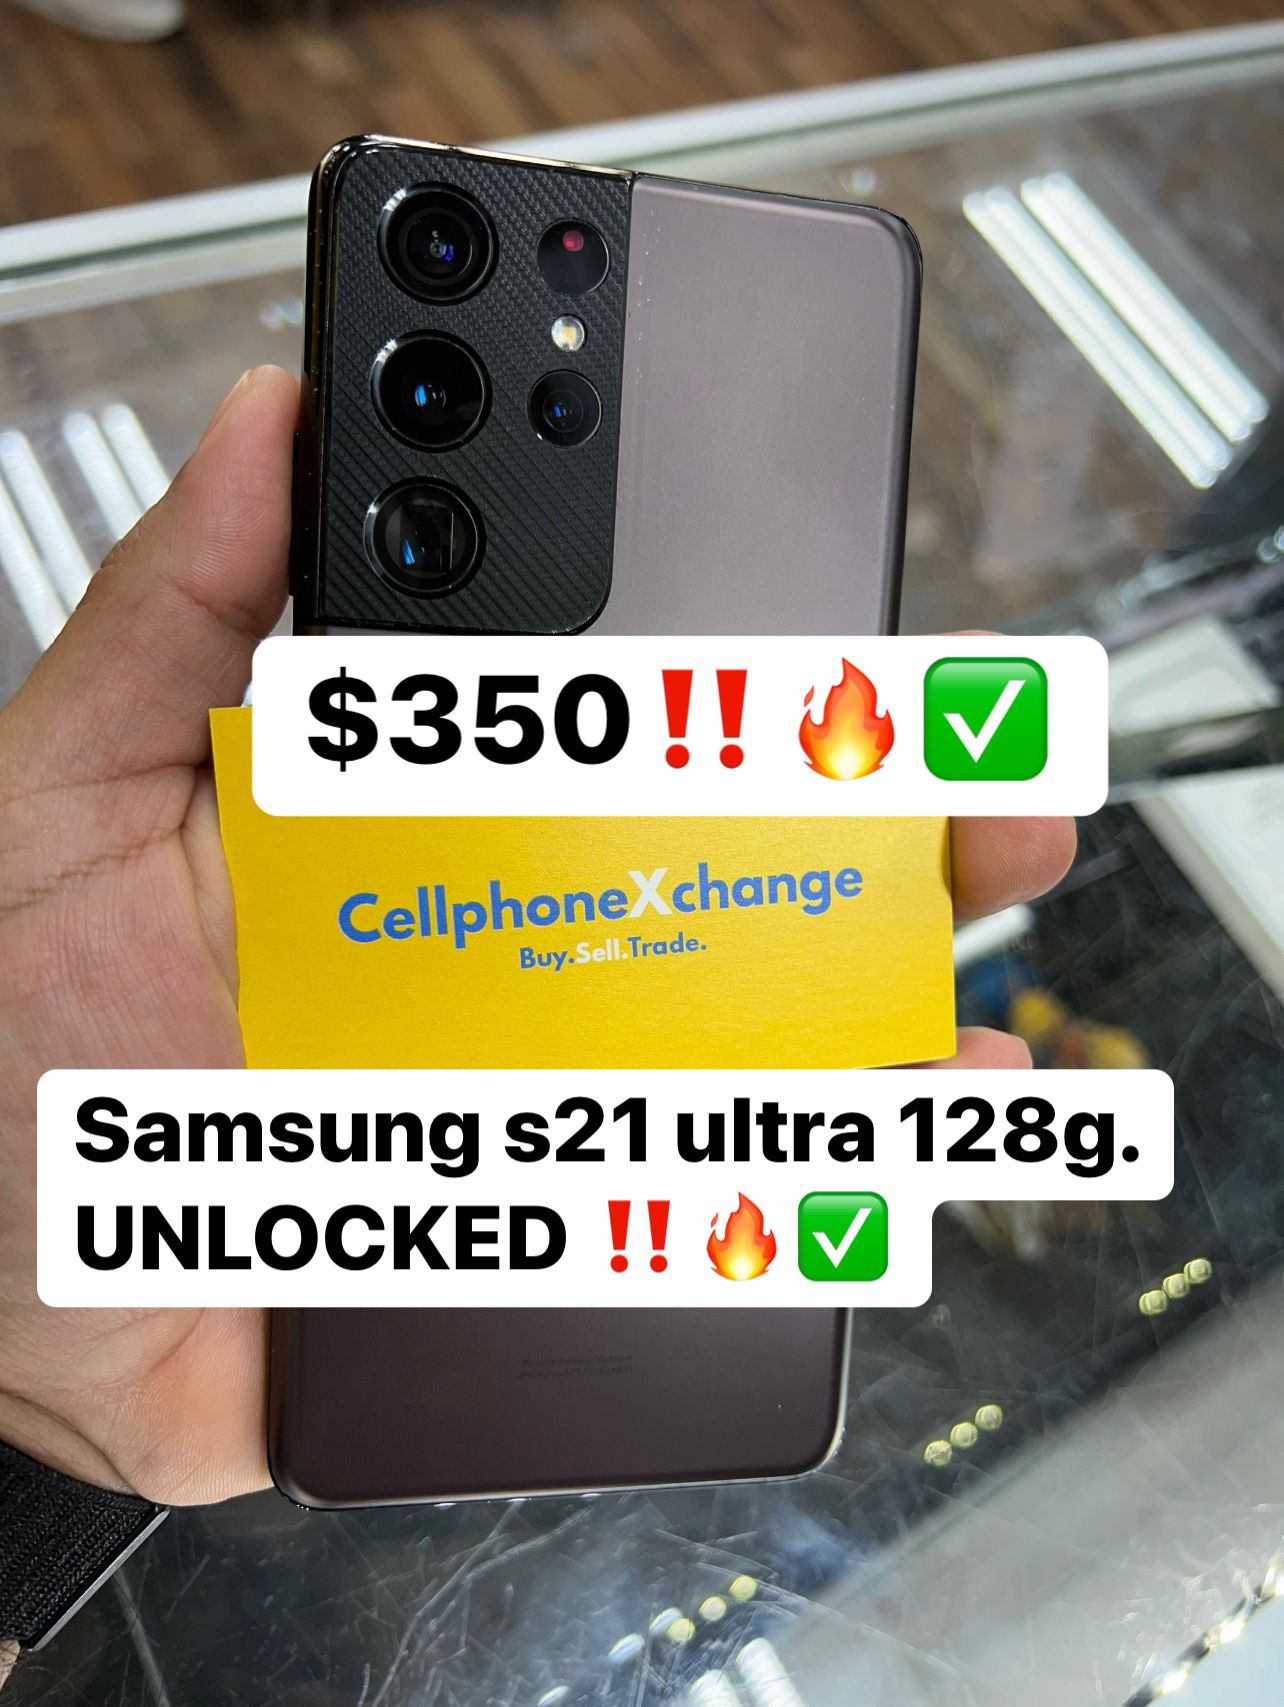 Samsung Galaxy S21 Ultra 128gb UNLOCKED 